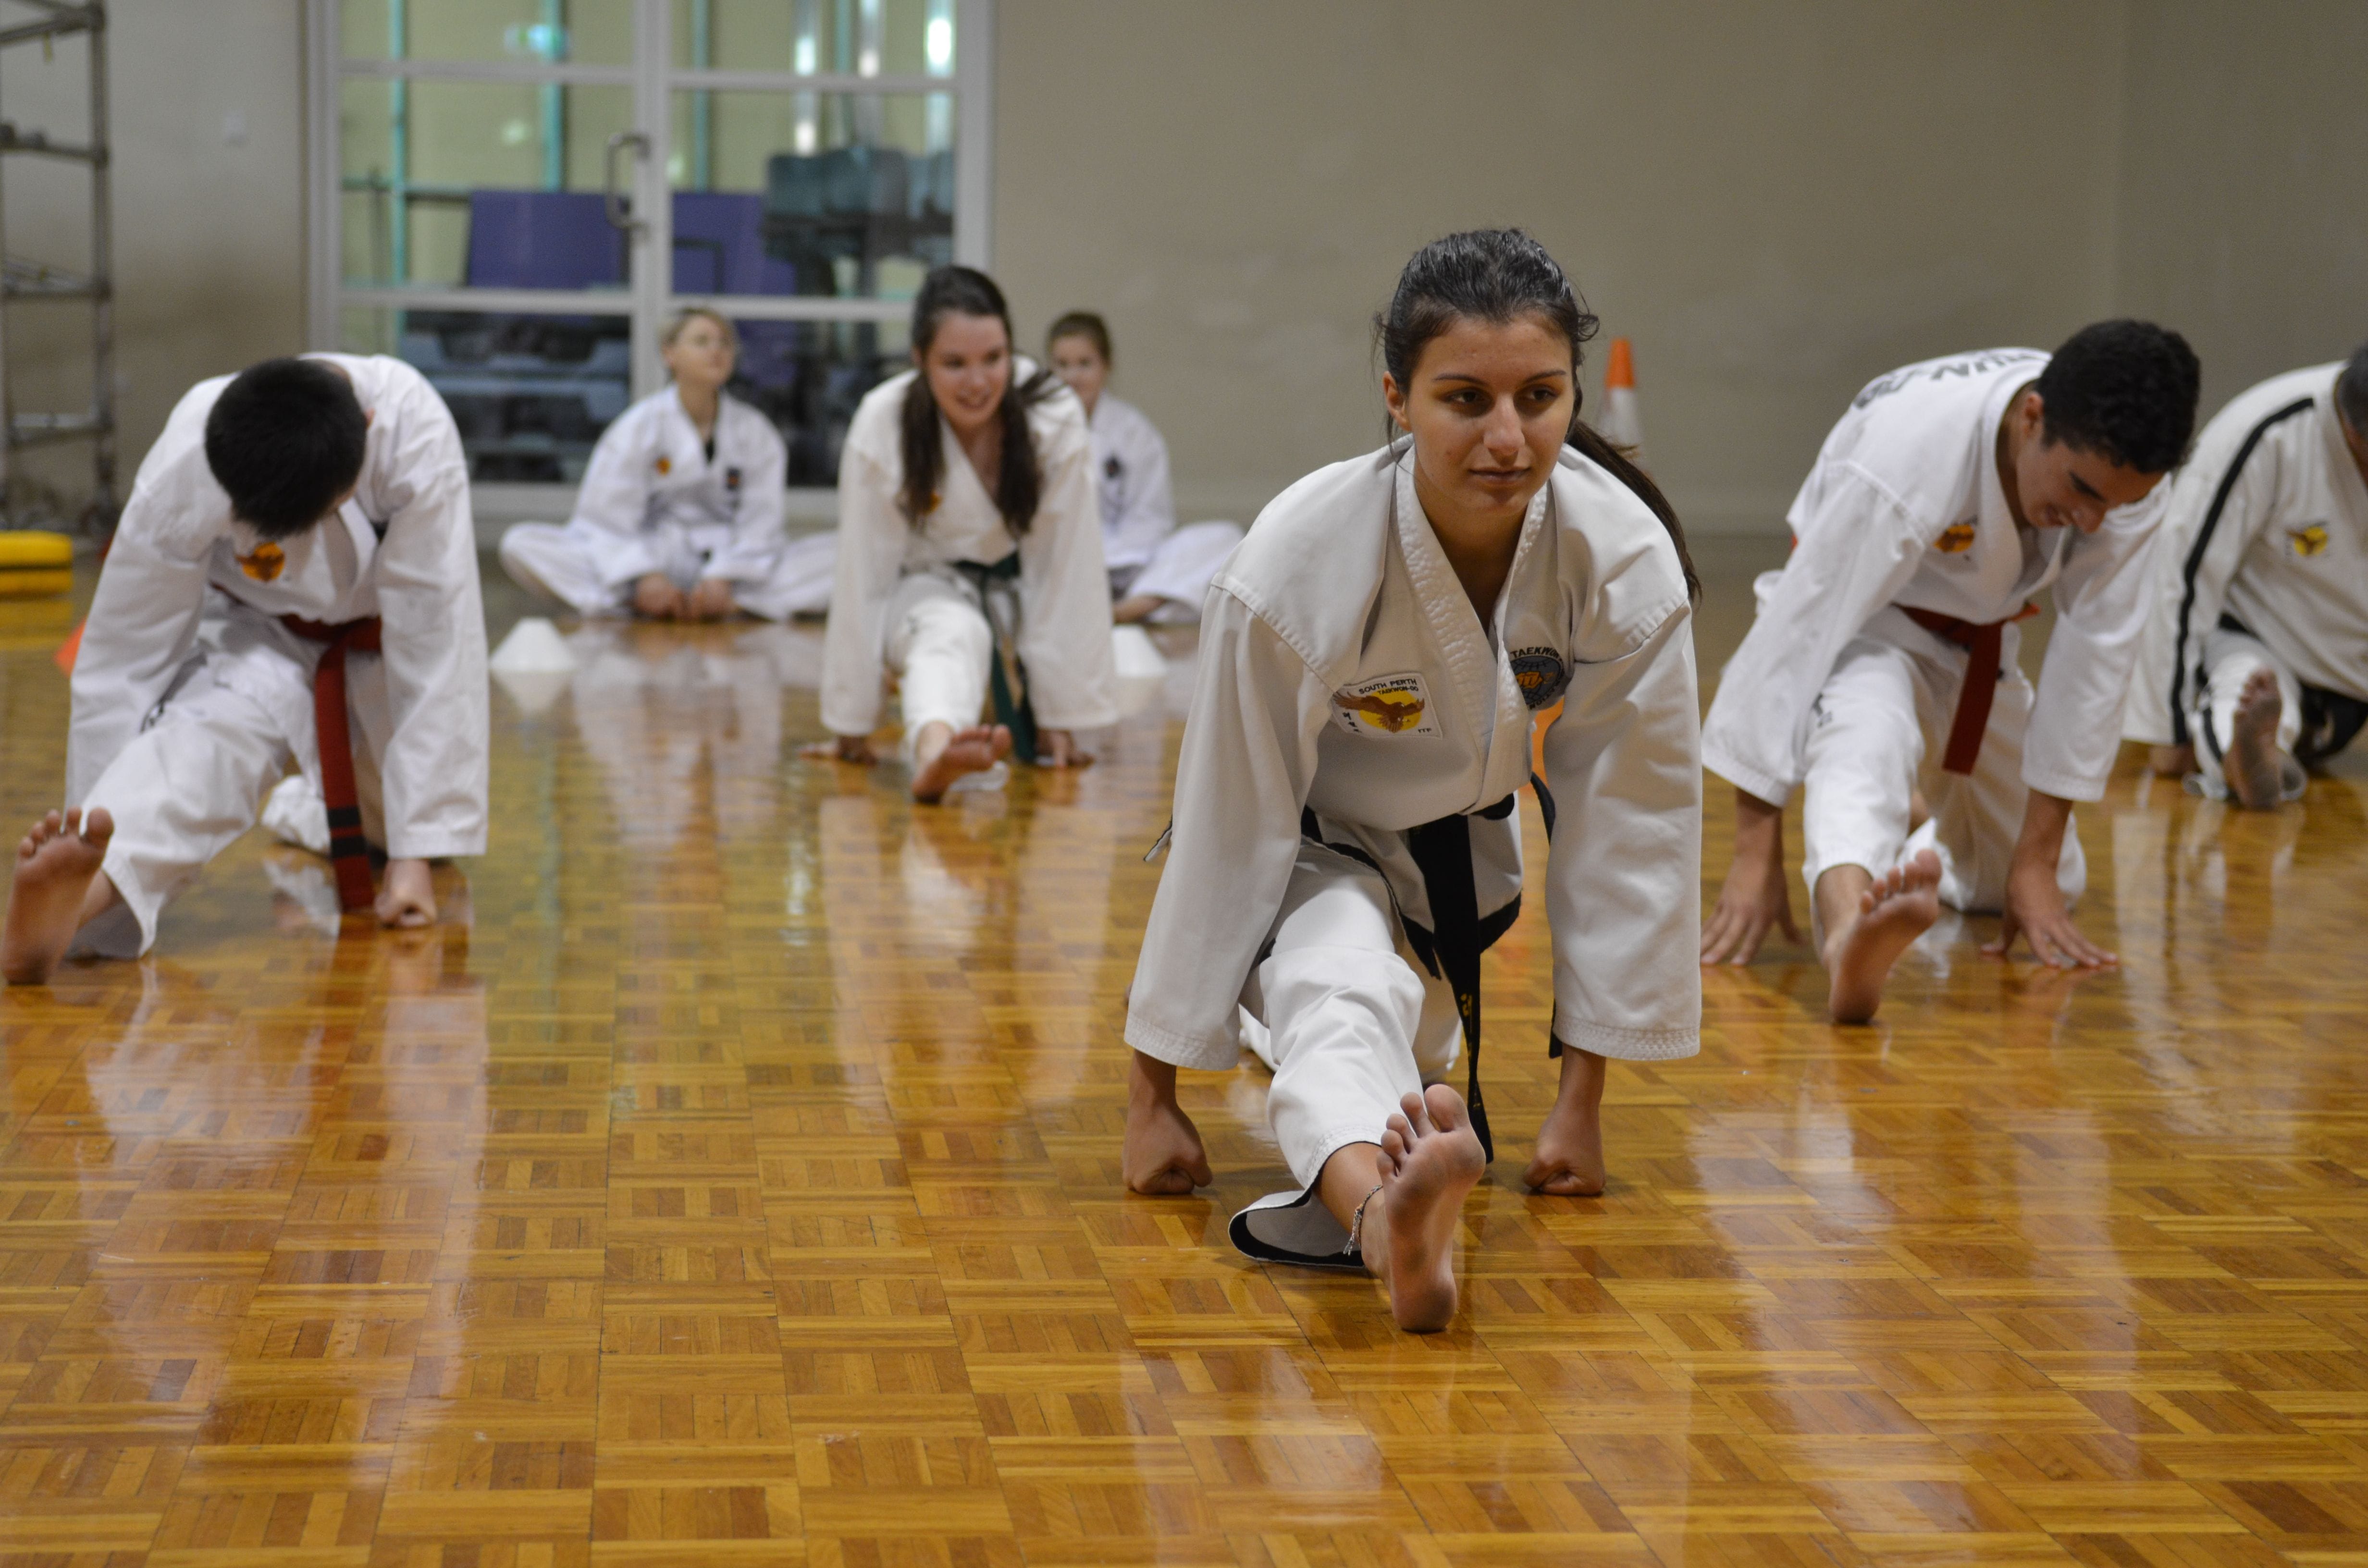 Martial arts and Self Defense Classes